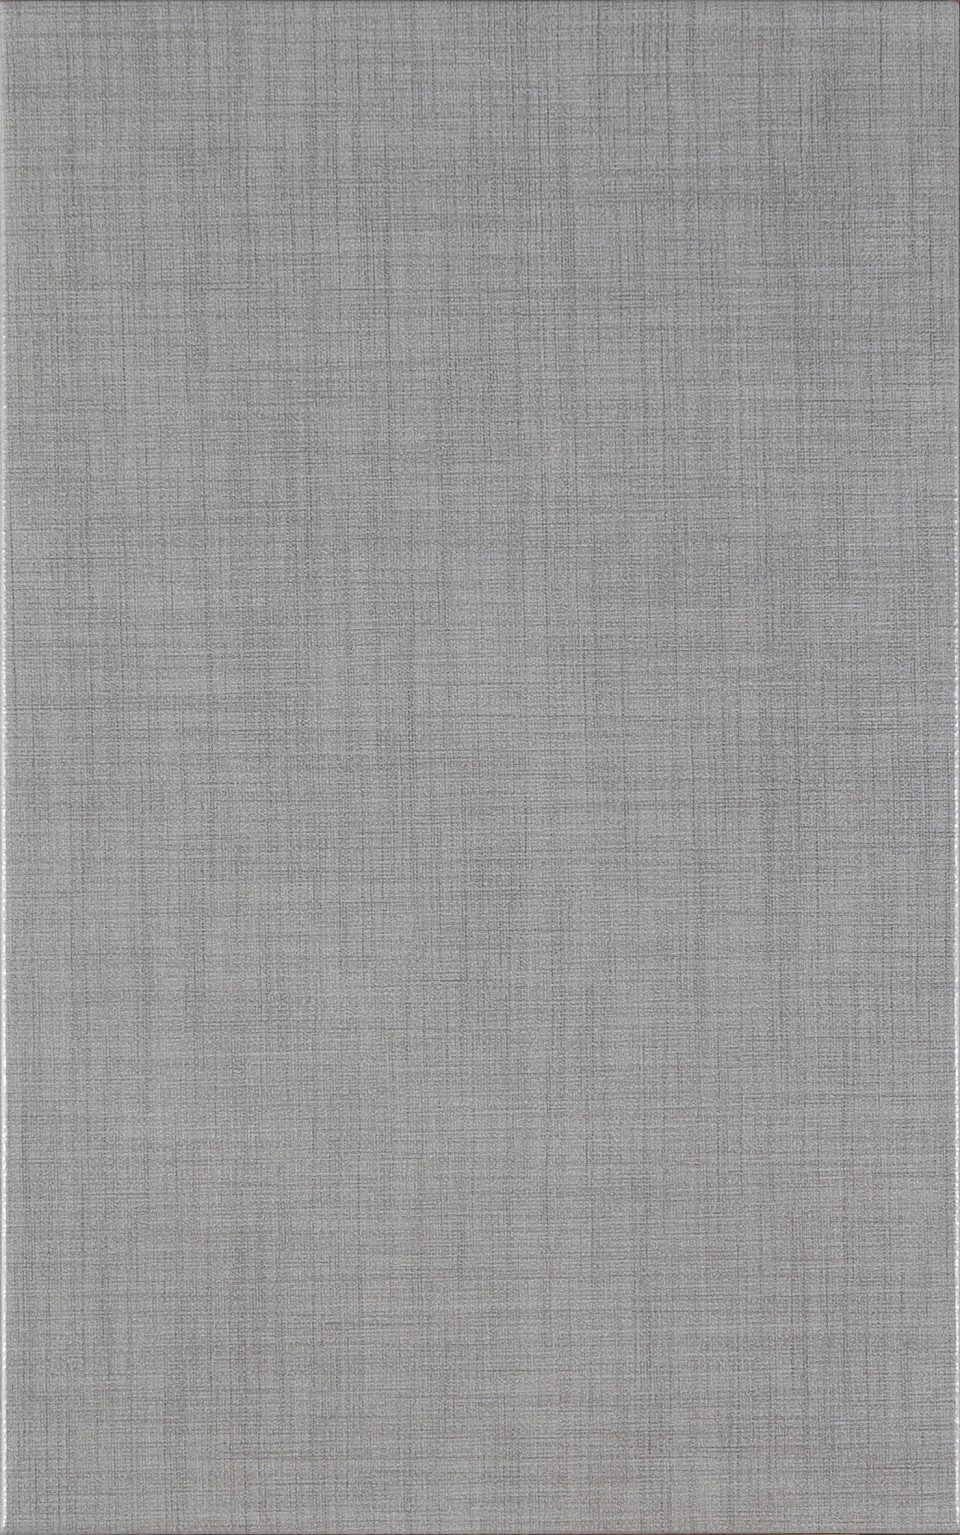 Csempe, KAI Group, Silk Grey 25*40 cm 5859 I.o. OOPR